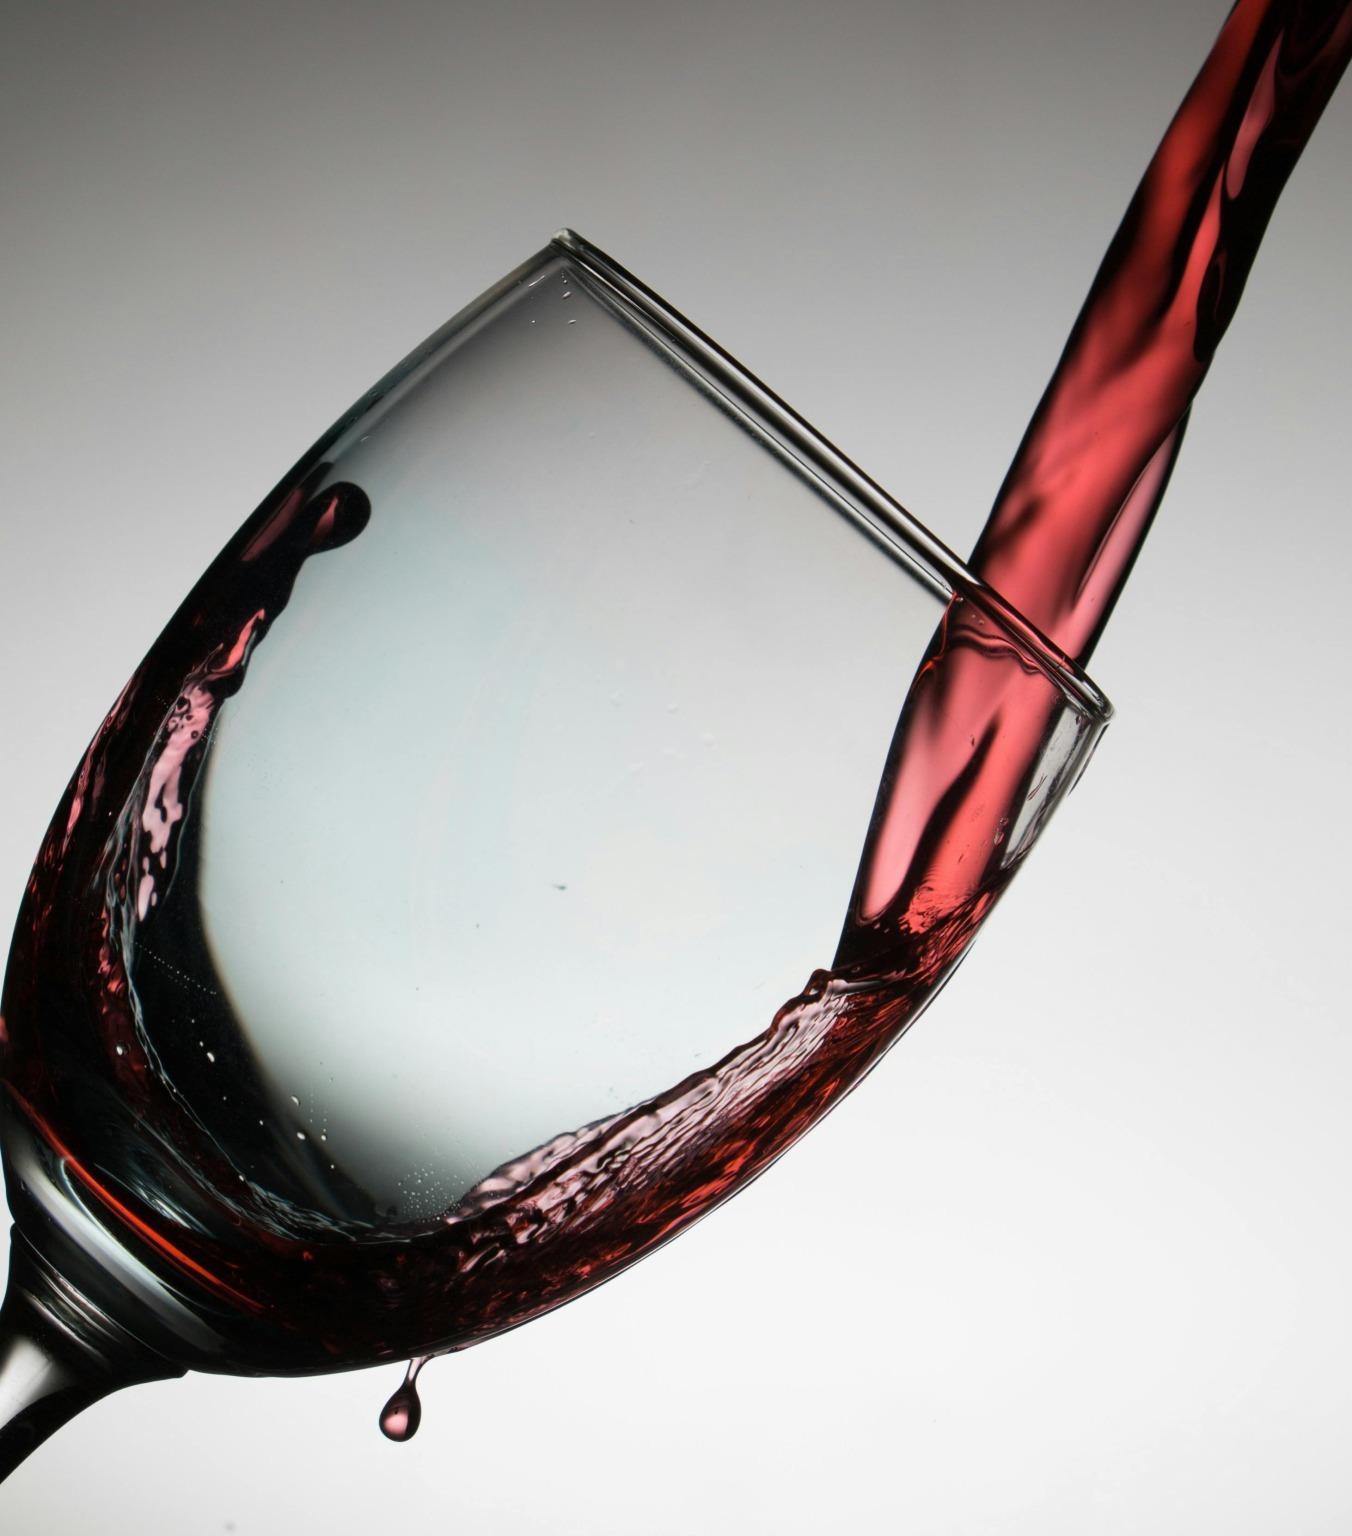 Copa de vino tinto servida, muestra de la rica cultura vinícola de Oporto.